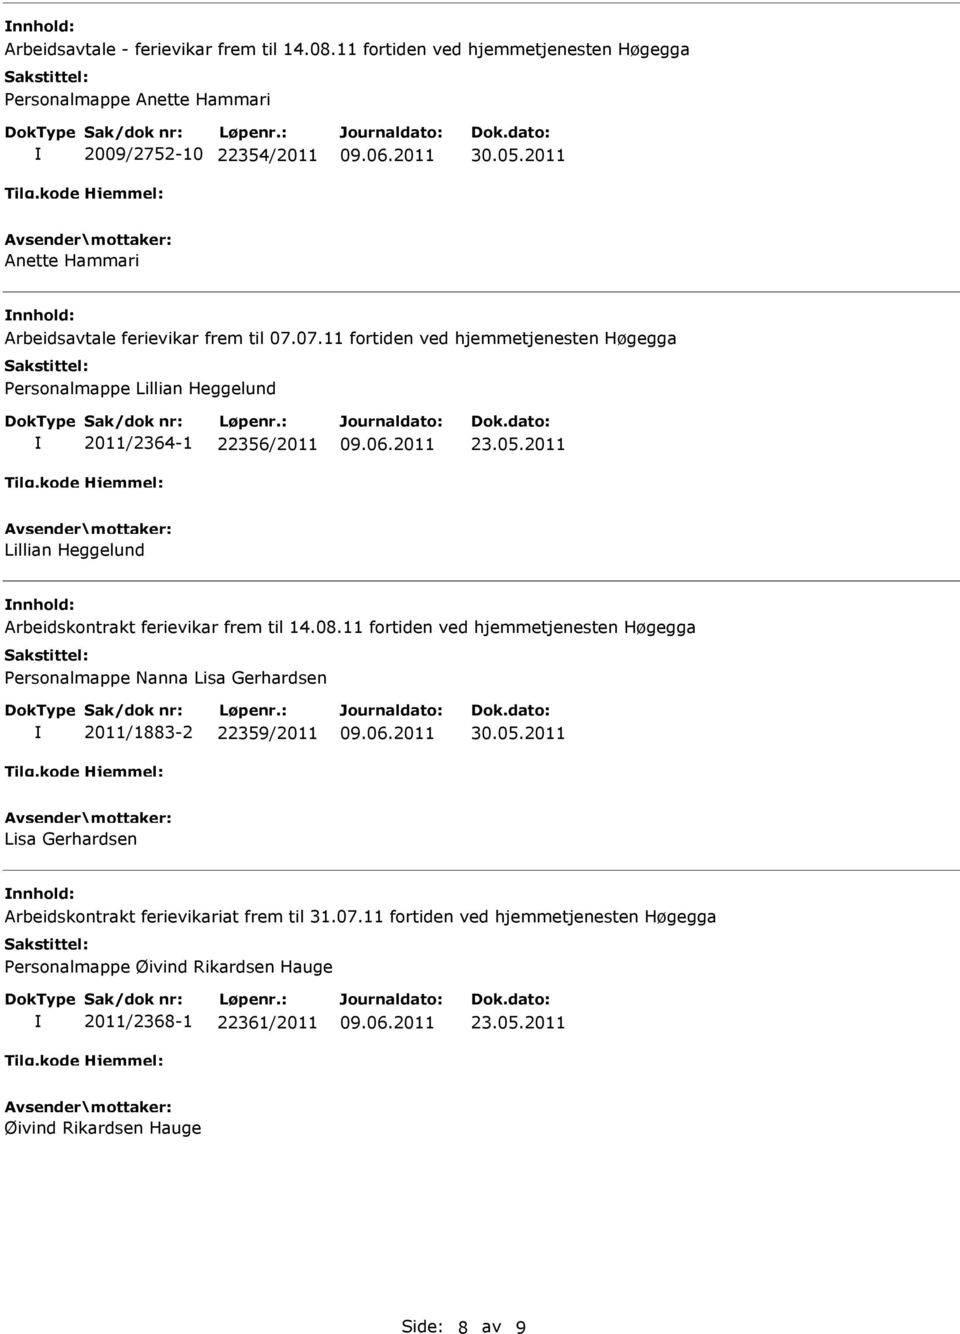 2011 Lillian Heggelund Arbeidskontrakt ferievikar frem til 14.08.11 fortiden ved hjemmetjenesten Høgegga Personalmappe Nanna Lisa Gerhardsen 2011/1883-2 22359/2011 30.05.